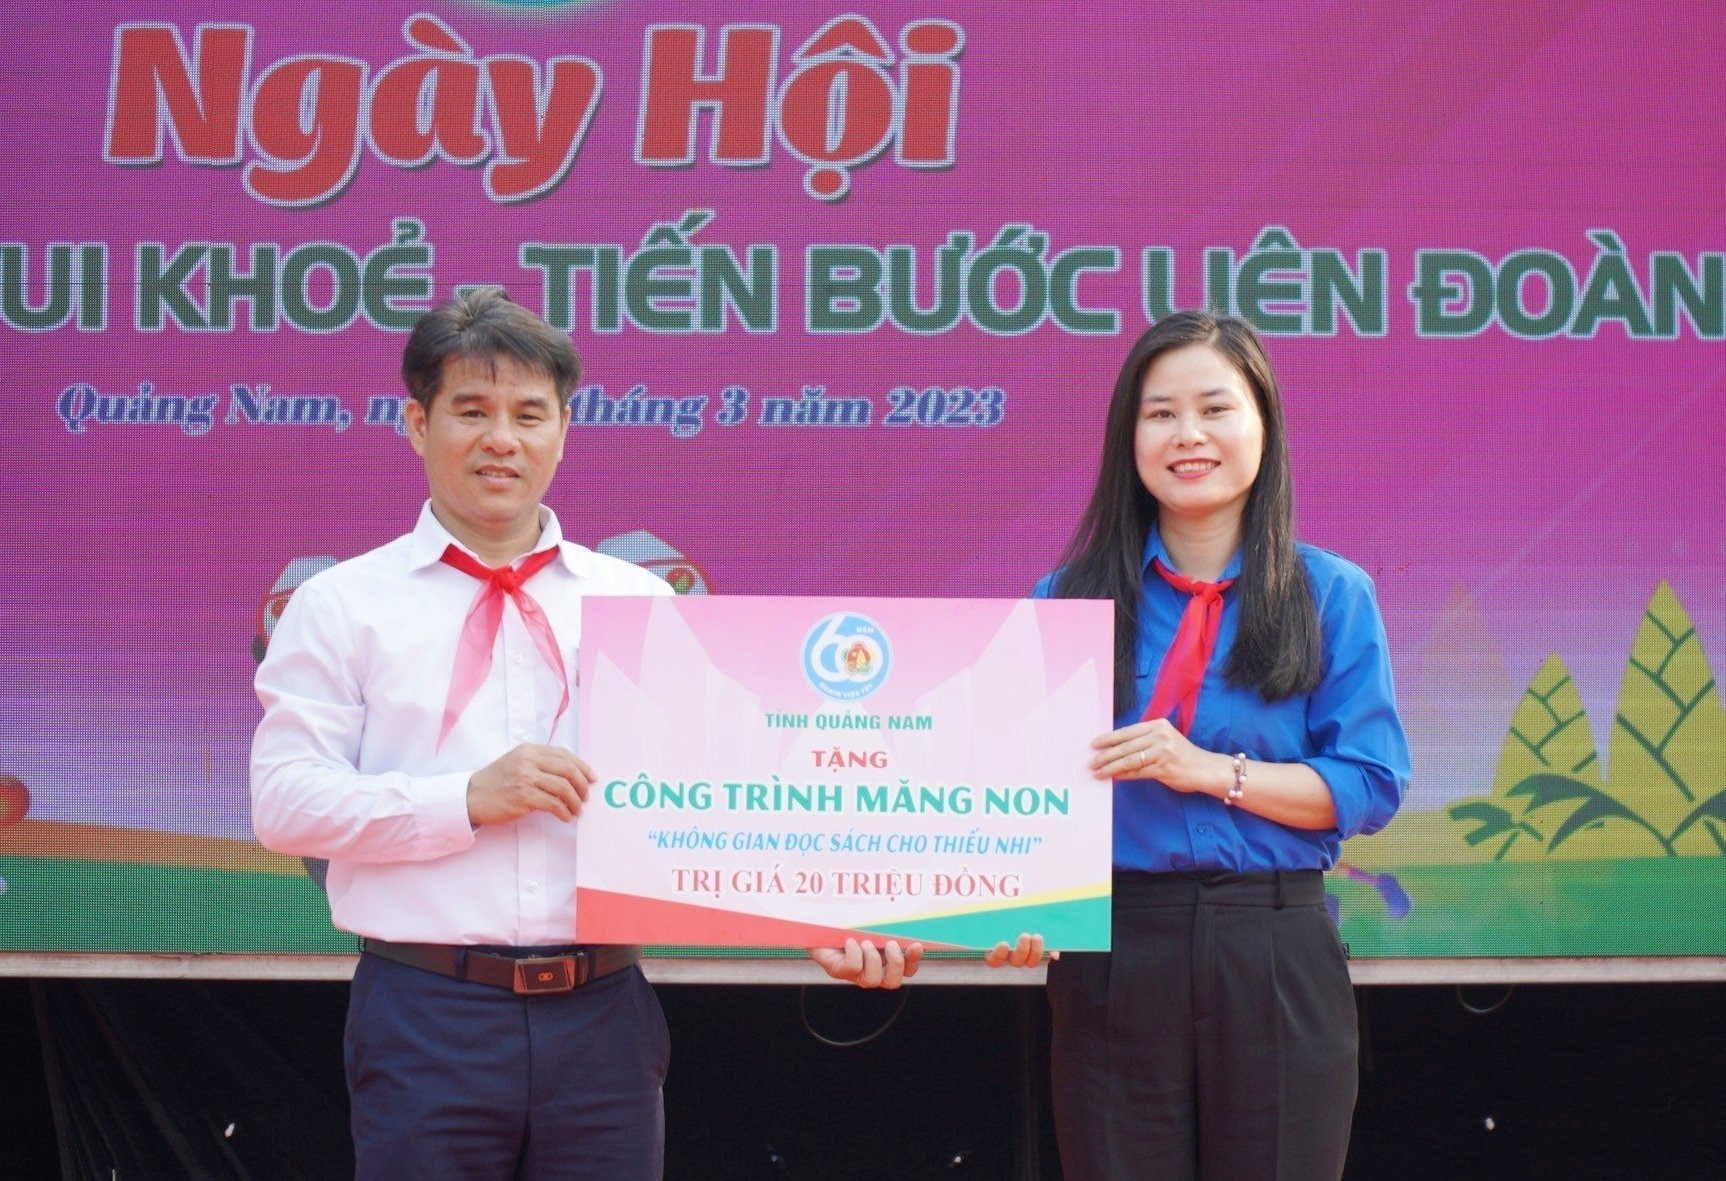 Tỉnh đoàn, Hội đồng Đội tỉnh đã trao tặng công trình măng non “Không gian đọc sách” cho Trường THCS Kim Đồn